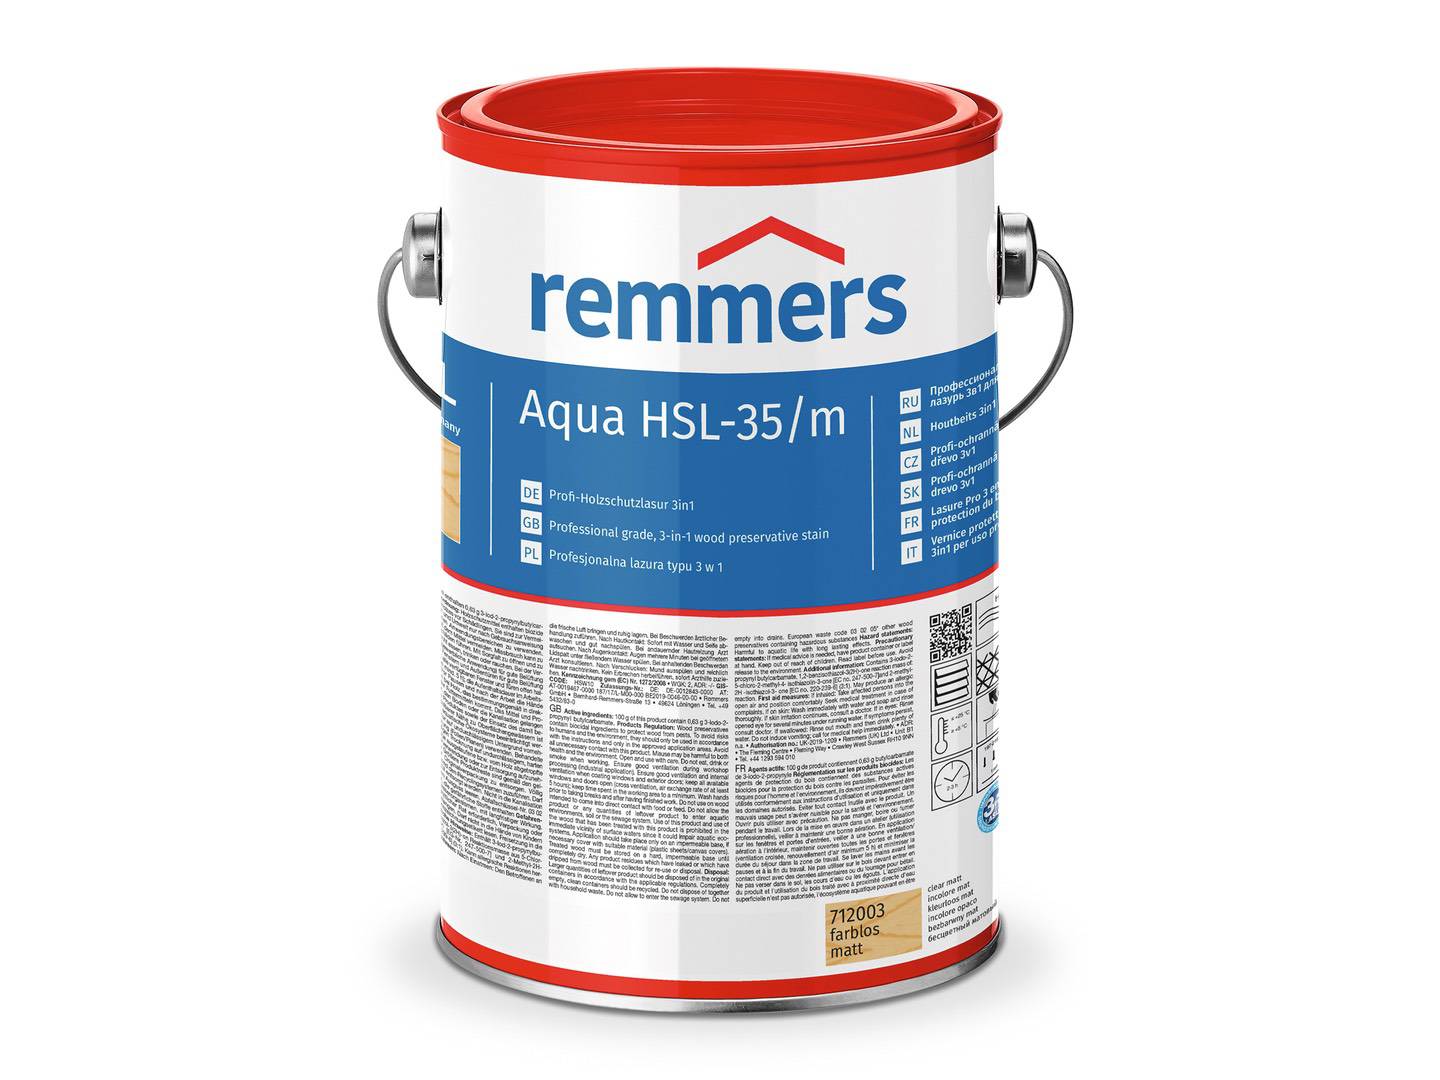 REMMERS Aqua HSL-35/m-Profi-Holzschutz-Lasur 3in1 farblos 5 l